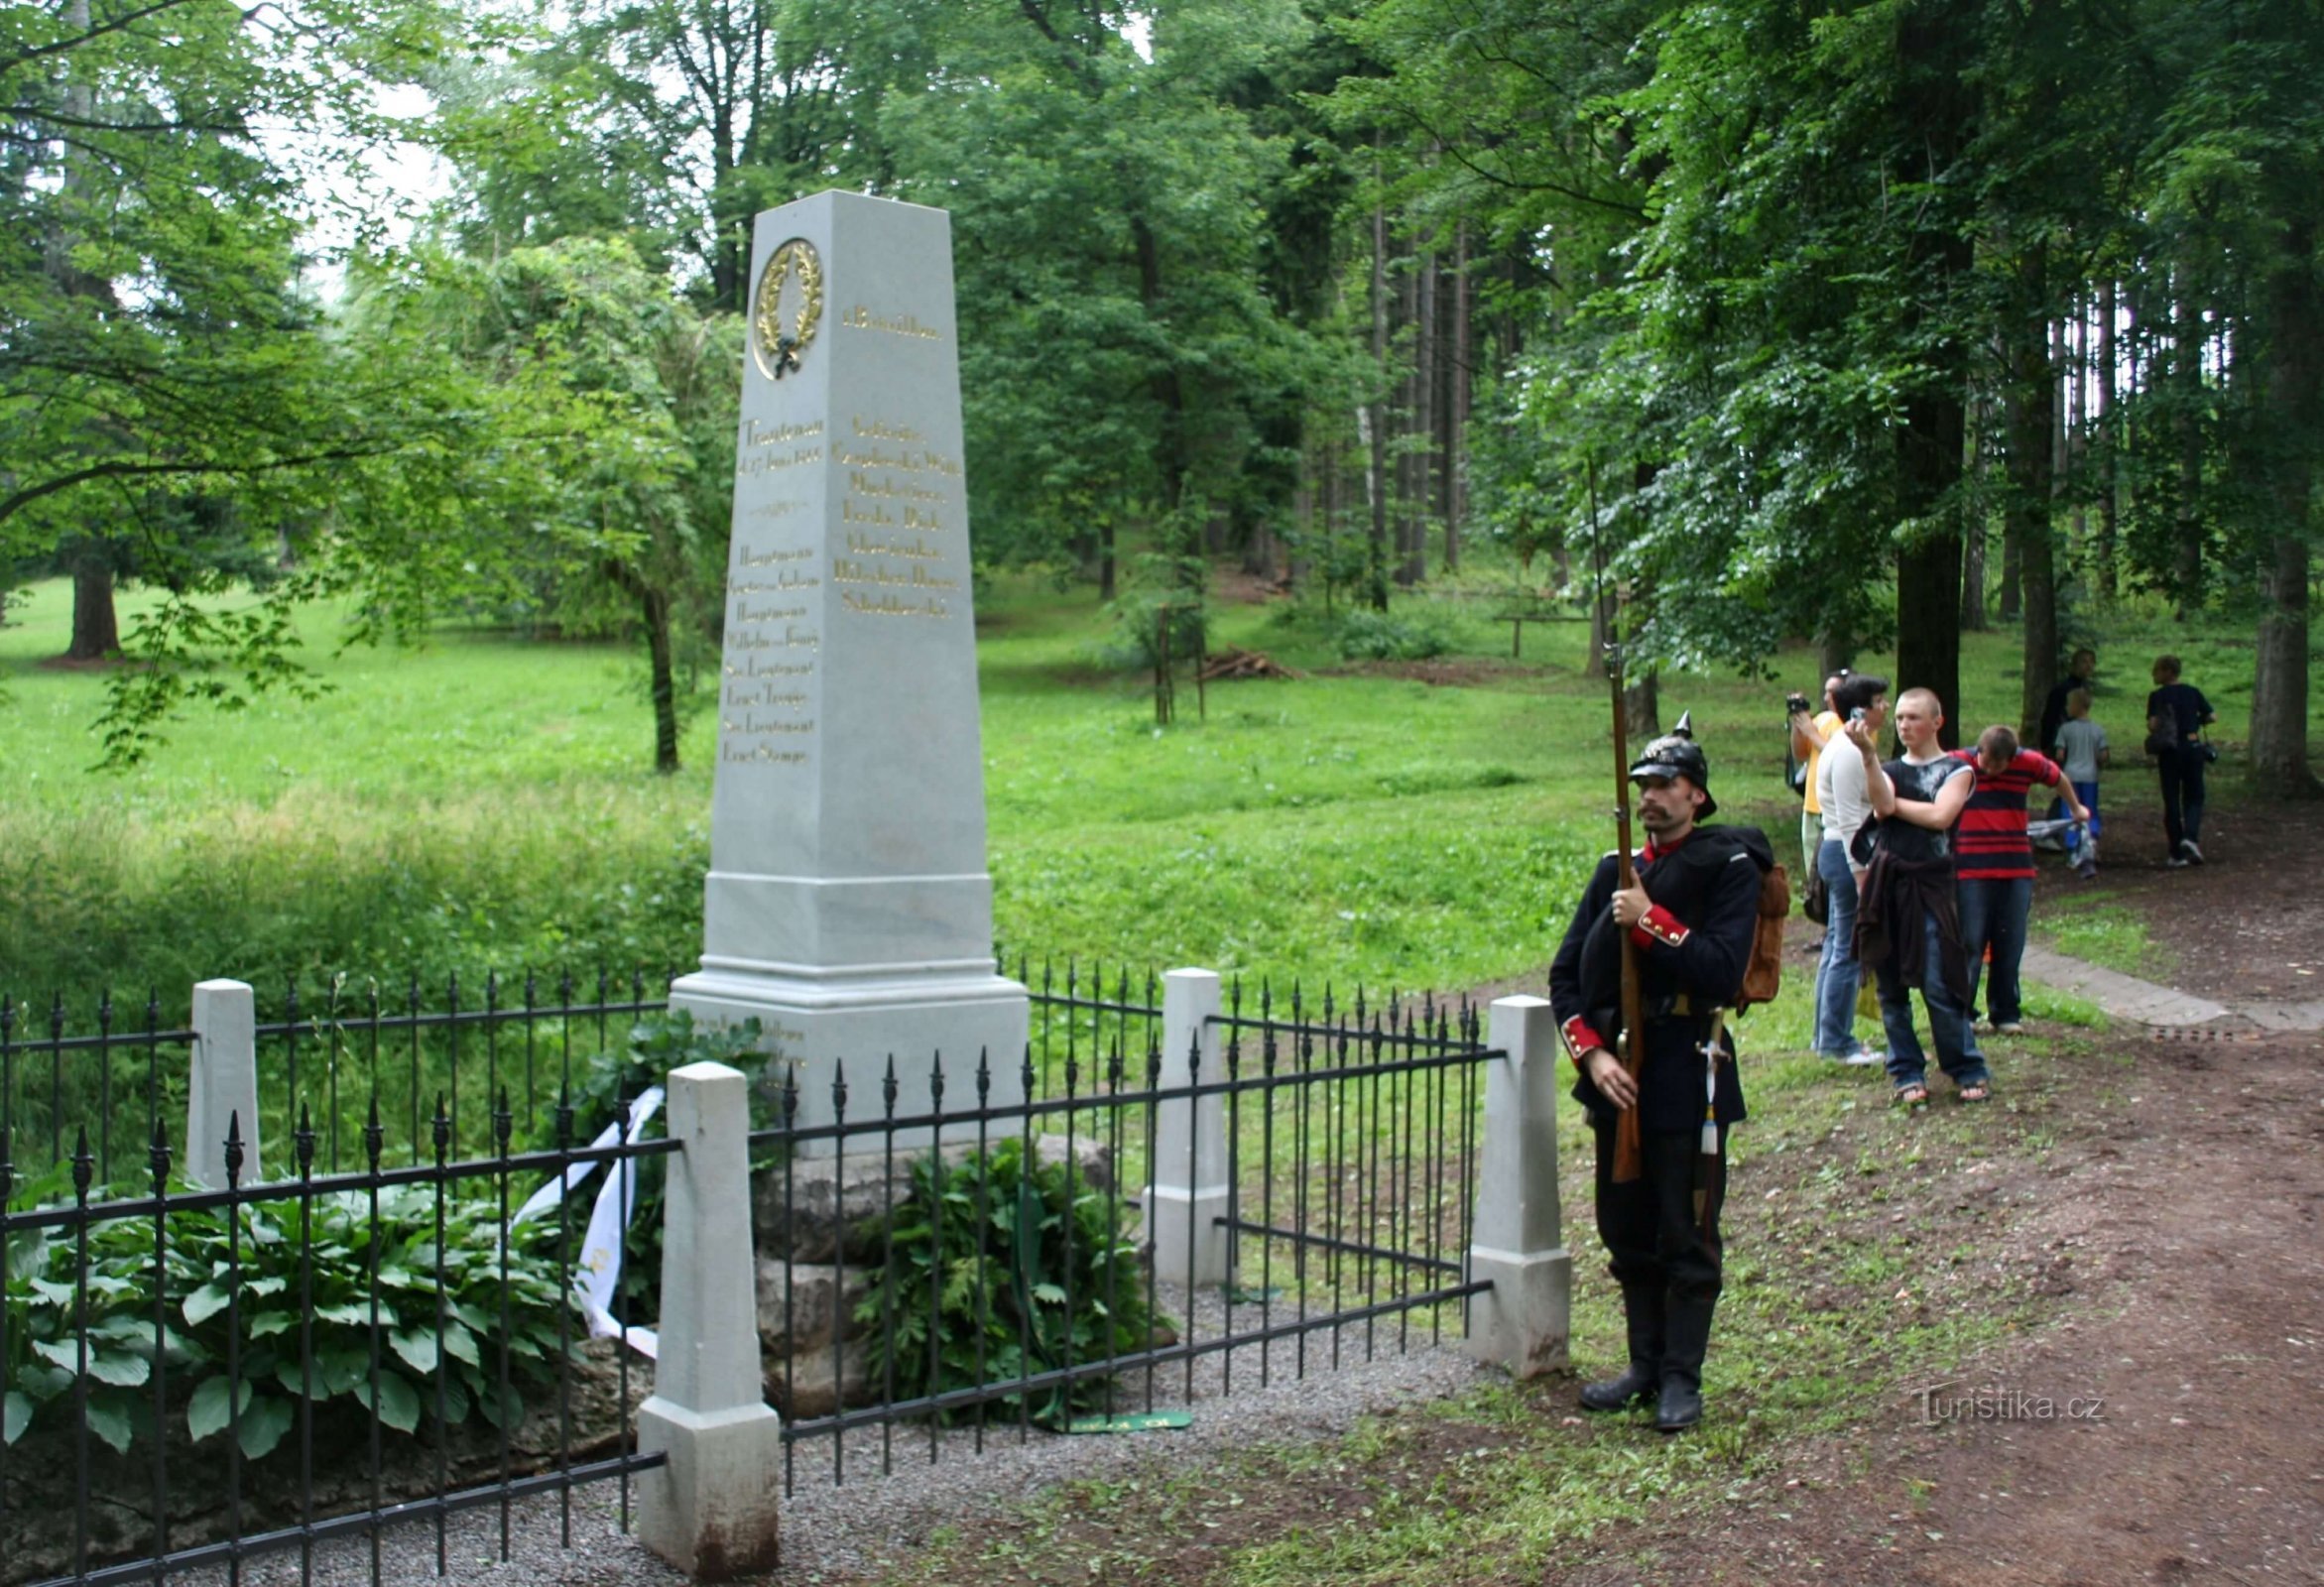 Trutnov, Commentato NS walk Il giorno della battaglia vicino a Trutnov, memoriale dei caduti